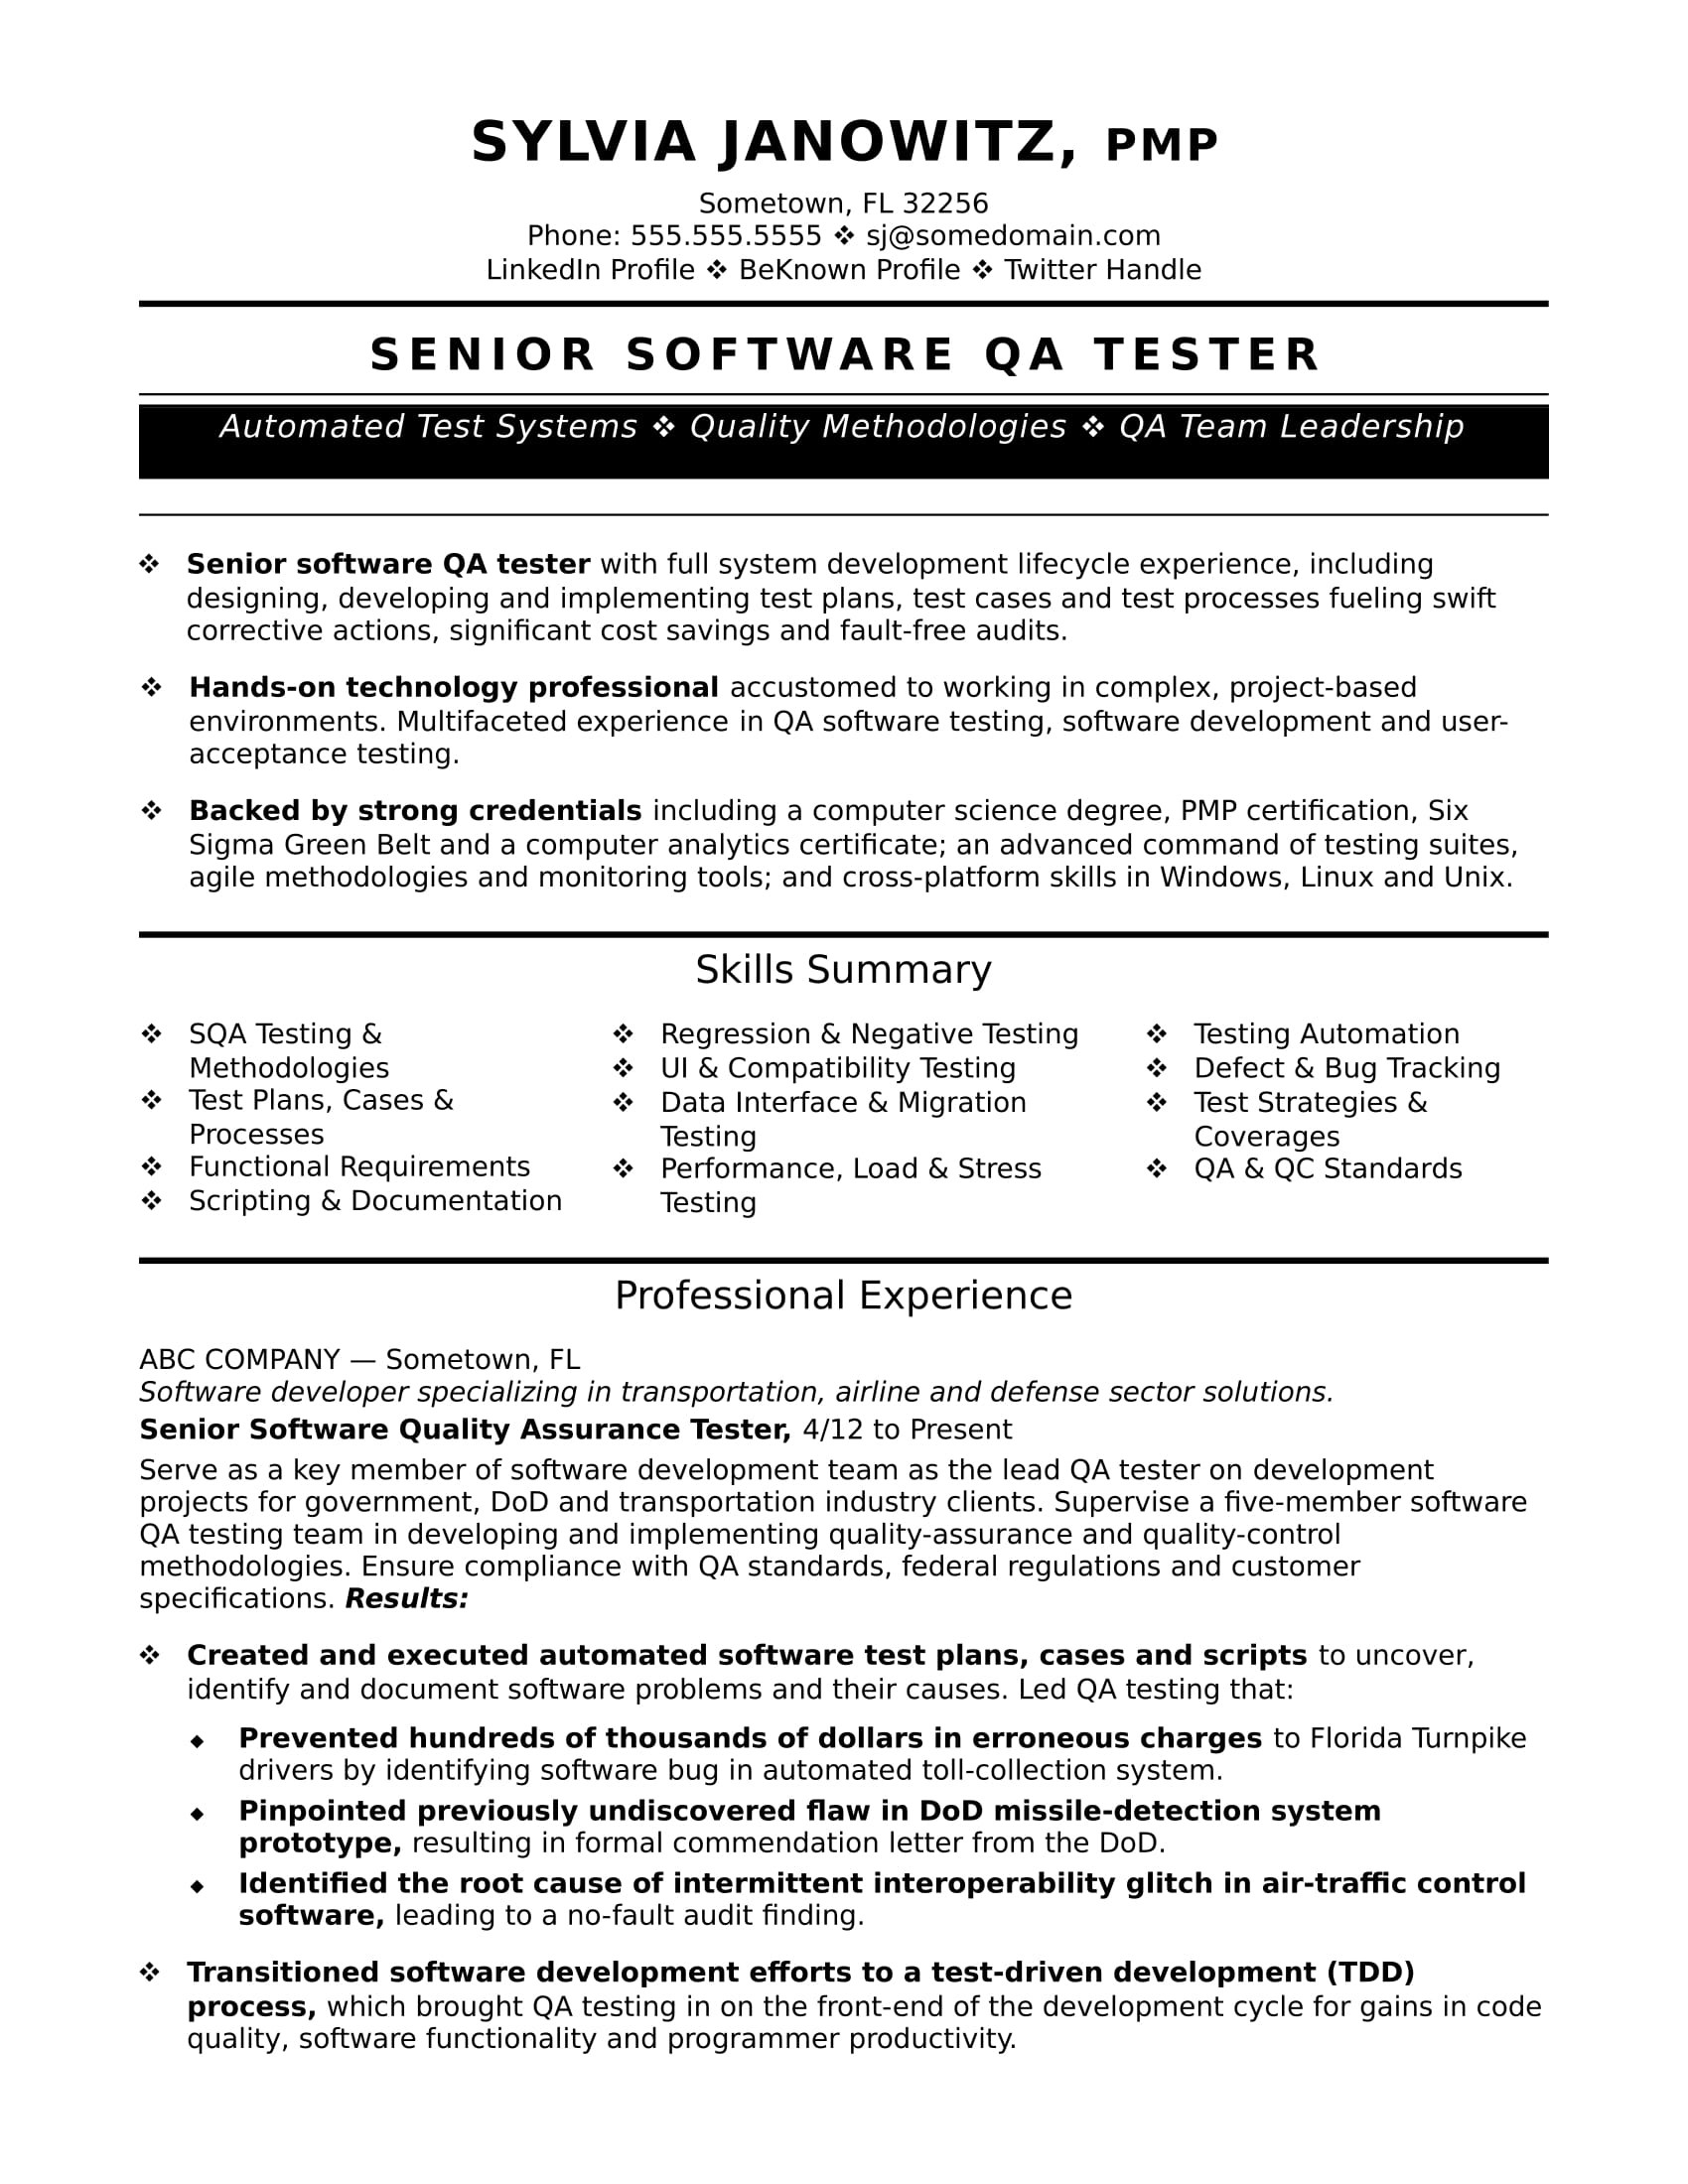 Sample Qa Tester Resume for Banking Domain Experienced Qa software Tester Resume Sample Monster.com